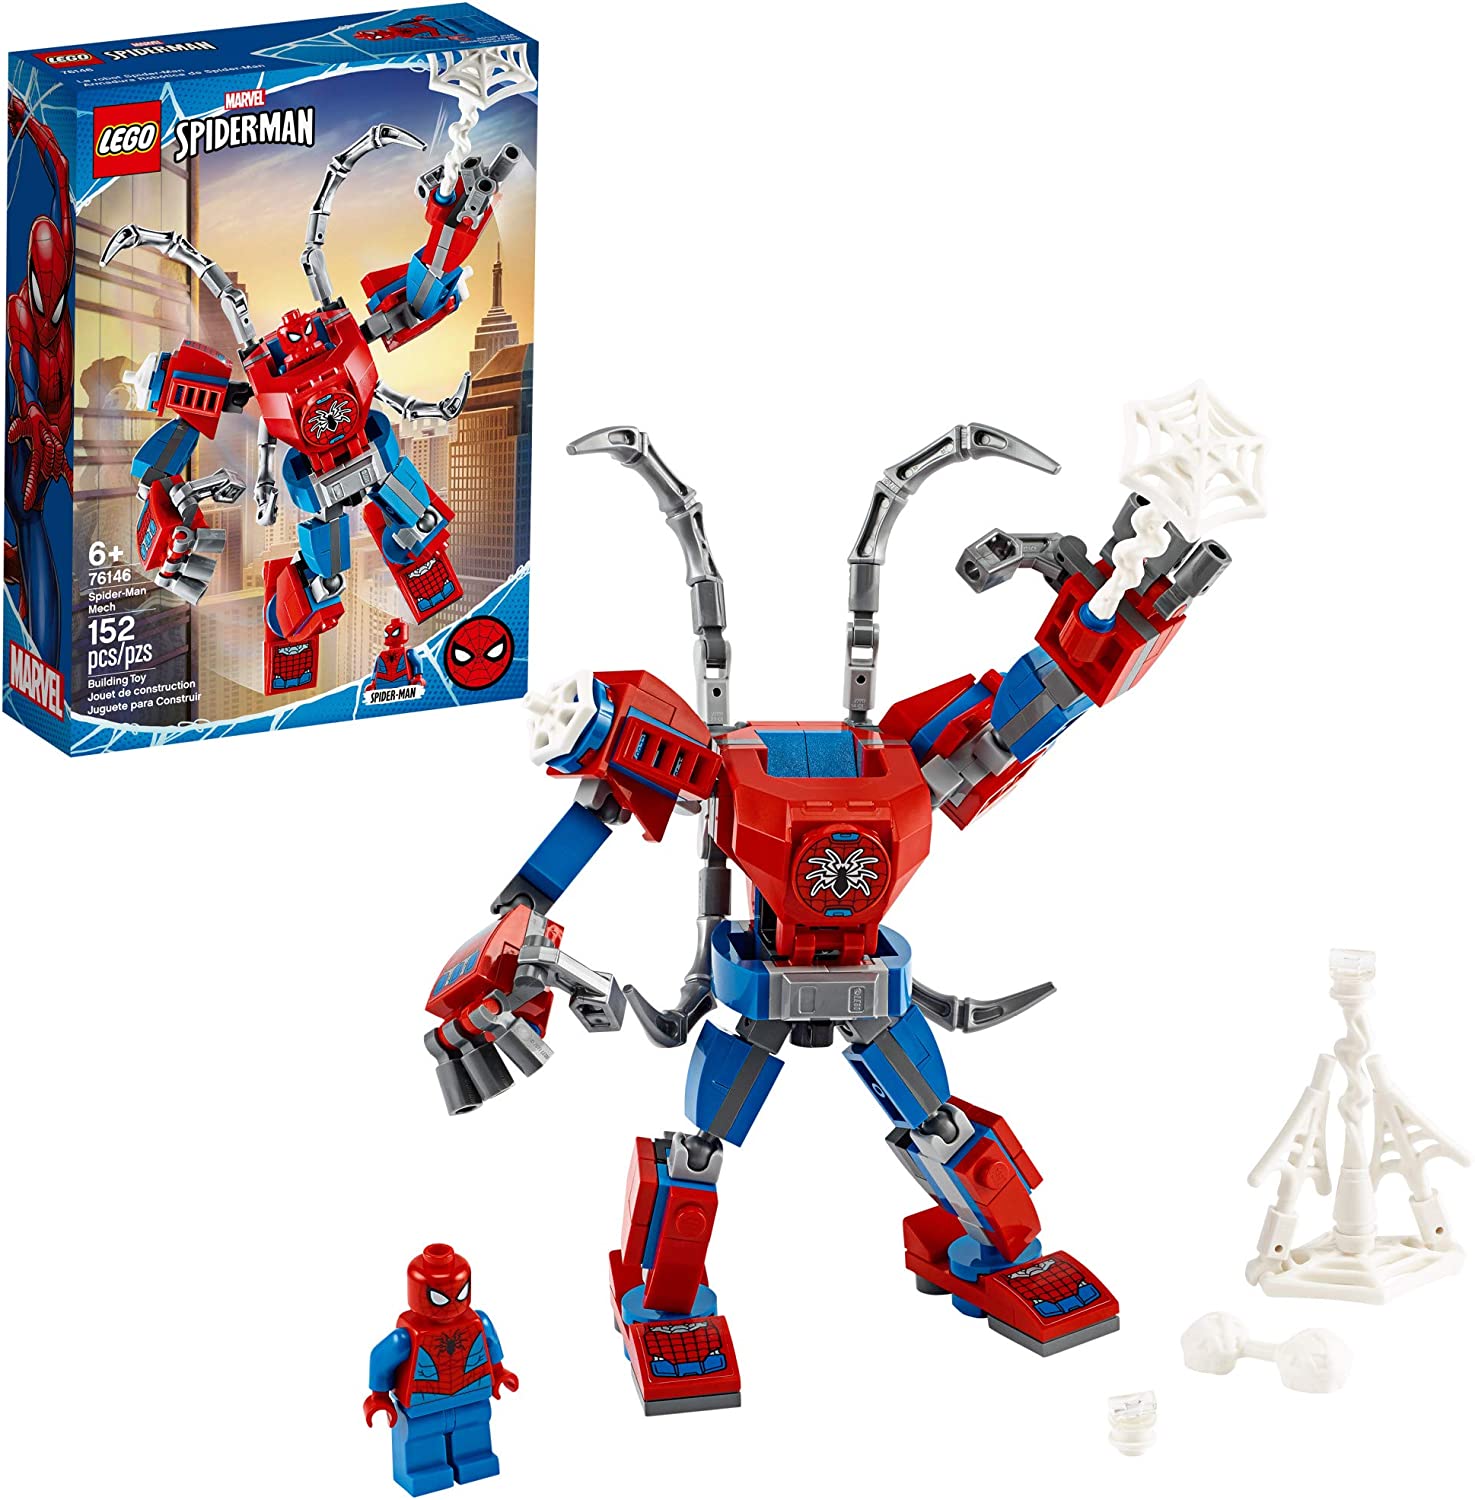 Với Lego Spider Man giá rẻ, bạn có thể sở hữu một món đồ chơi vừa chất lượng, vừa đáng yêu mà không cần phải tiêu tốn quá nhiều chi phí. Hãy tưởng tượng bộ Lego này được lắp ráp từ hàng chục chi tiết nhỏ xinh sẽ tạo nên một chiếc Spider Man vô cùng đáng yêu và dễ thương.